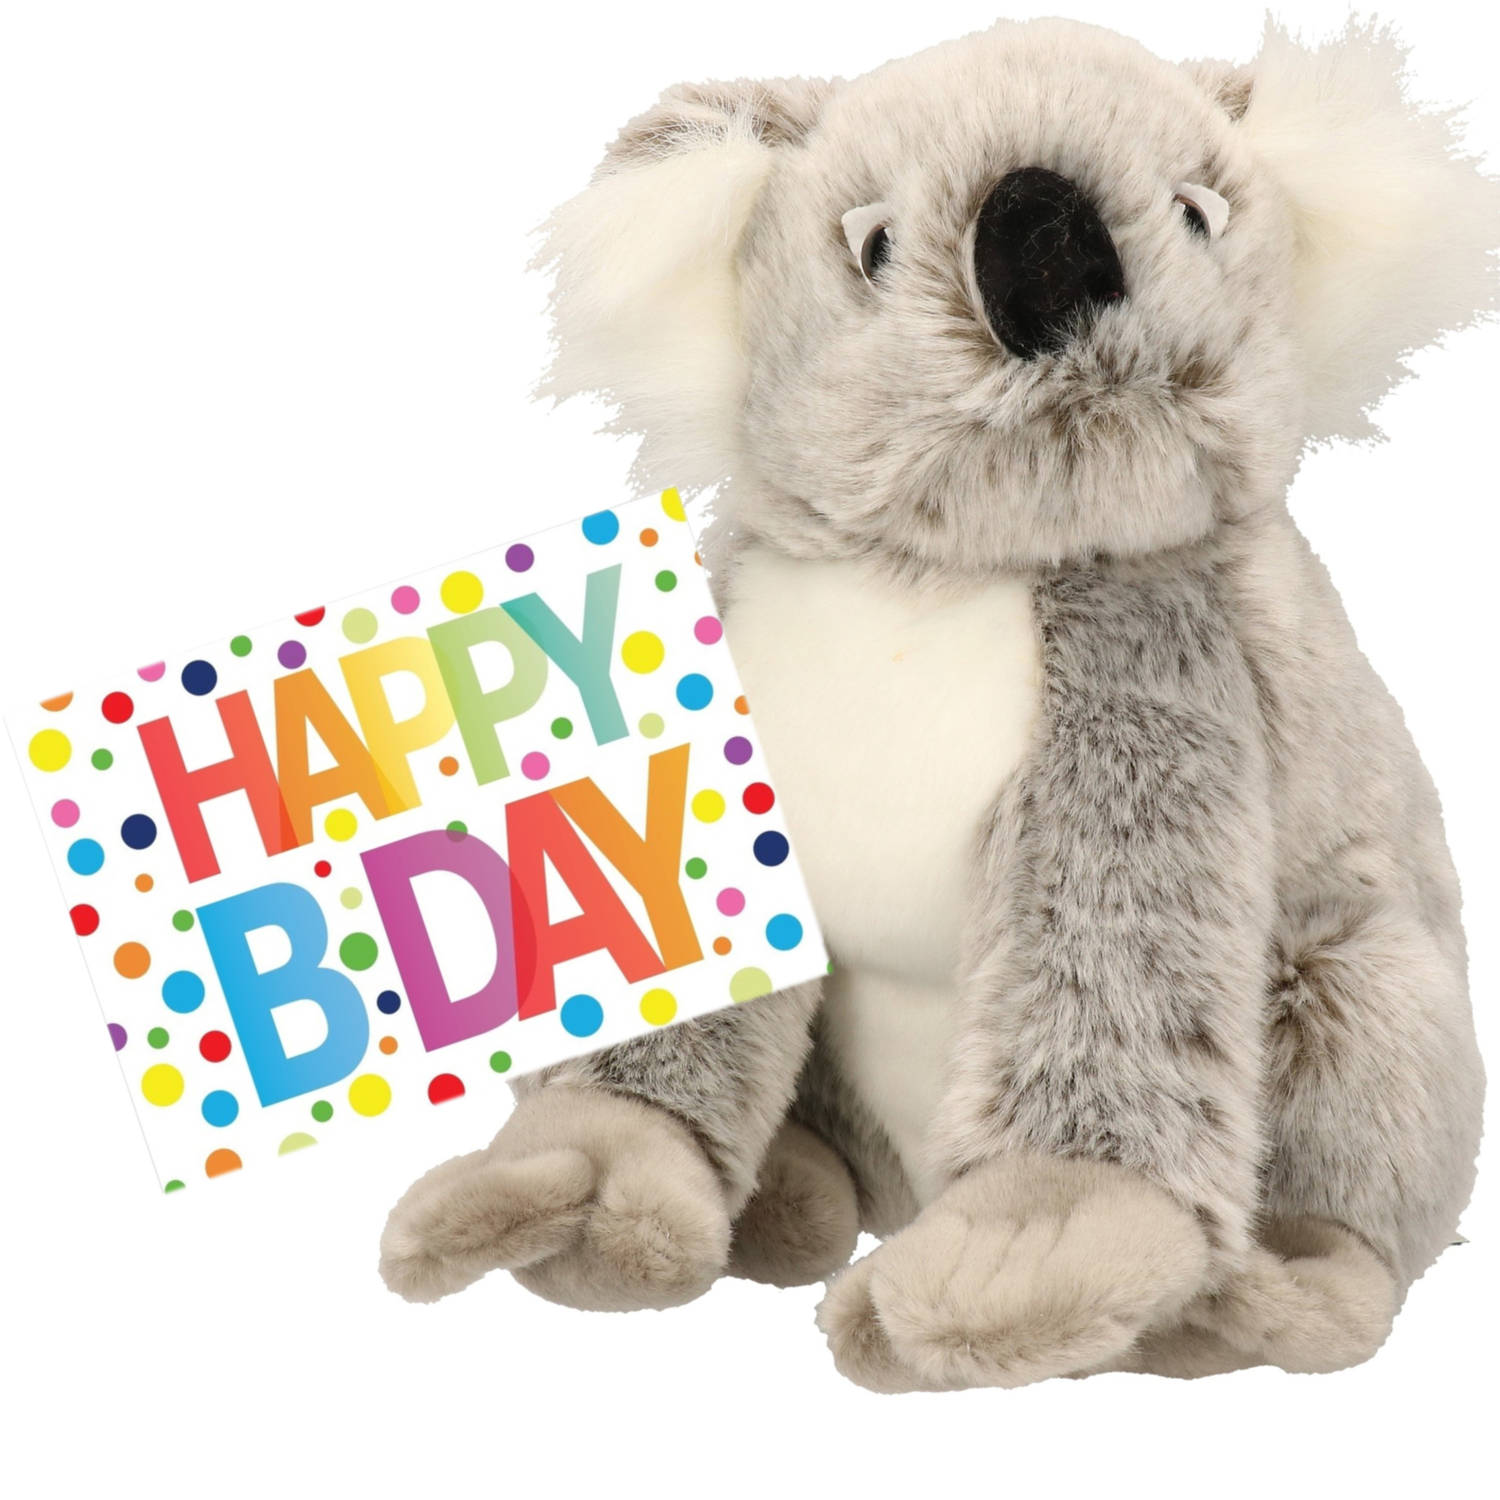 Pluche knuffel koala beer 25 cm met A5-size Happy Birthday wenskaart Knuffeldier